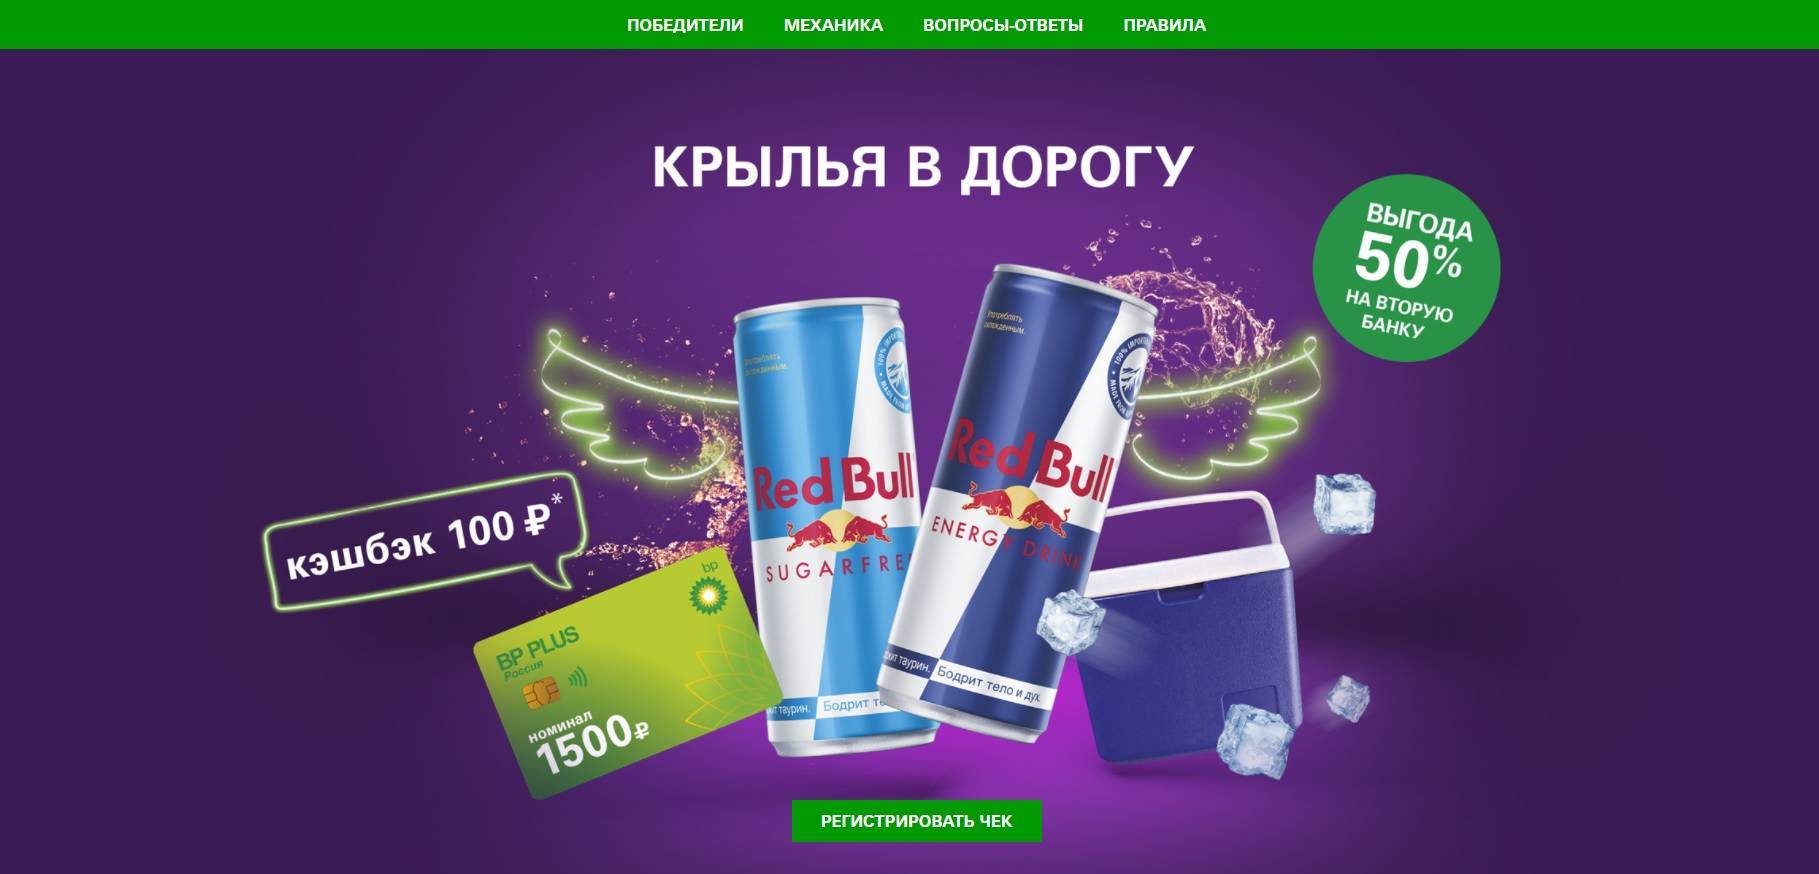 Промо-акция Red Bull и BP: «Выигрывай призы на BP»